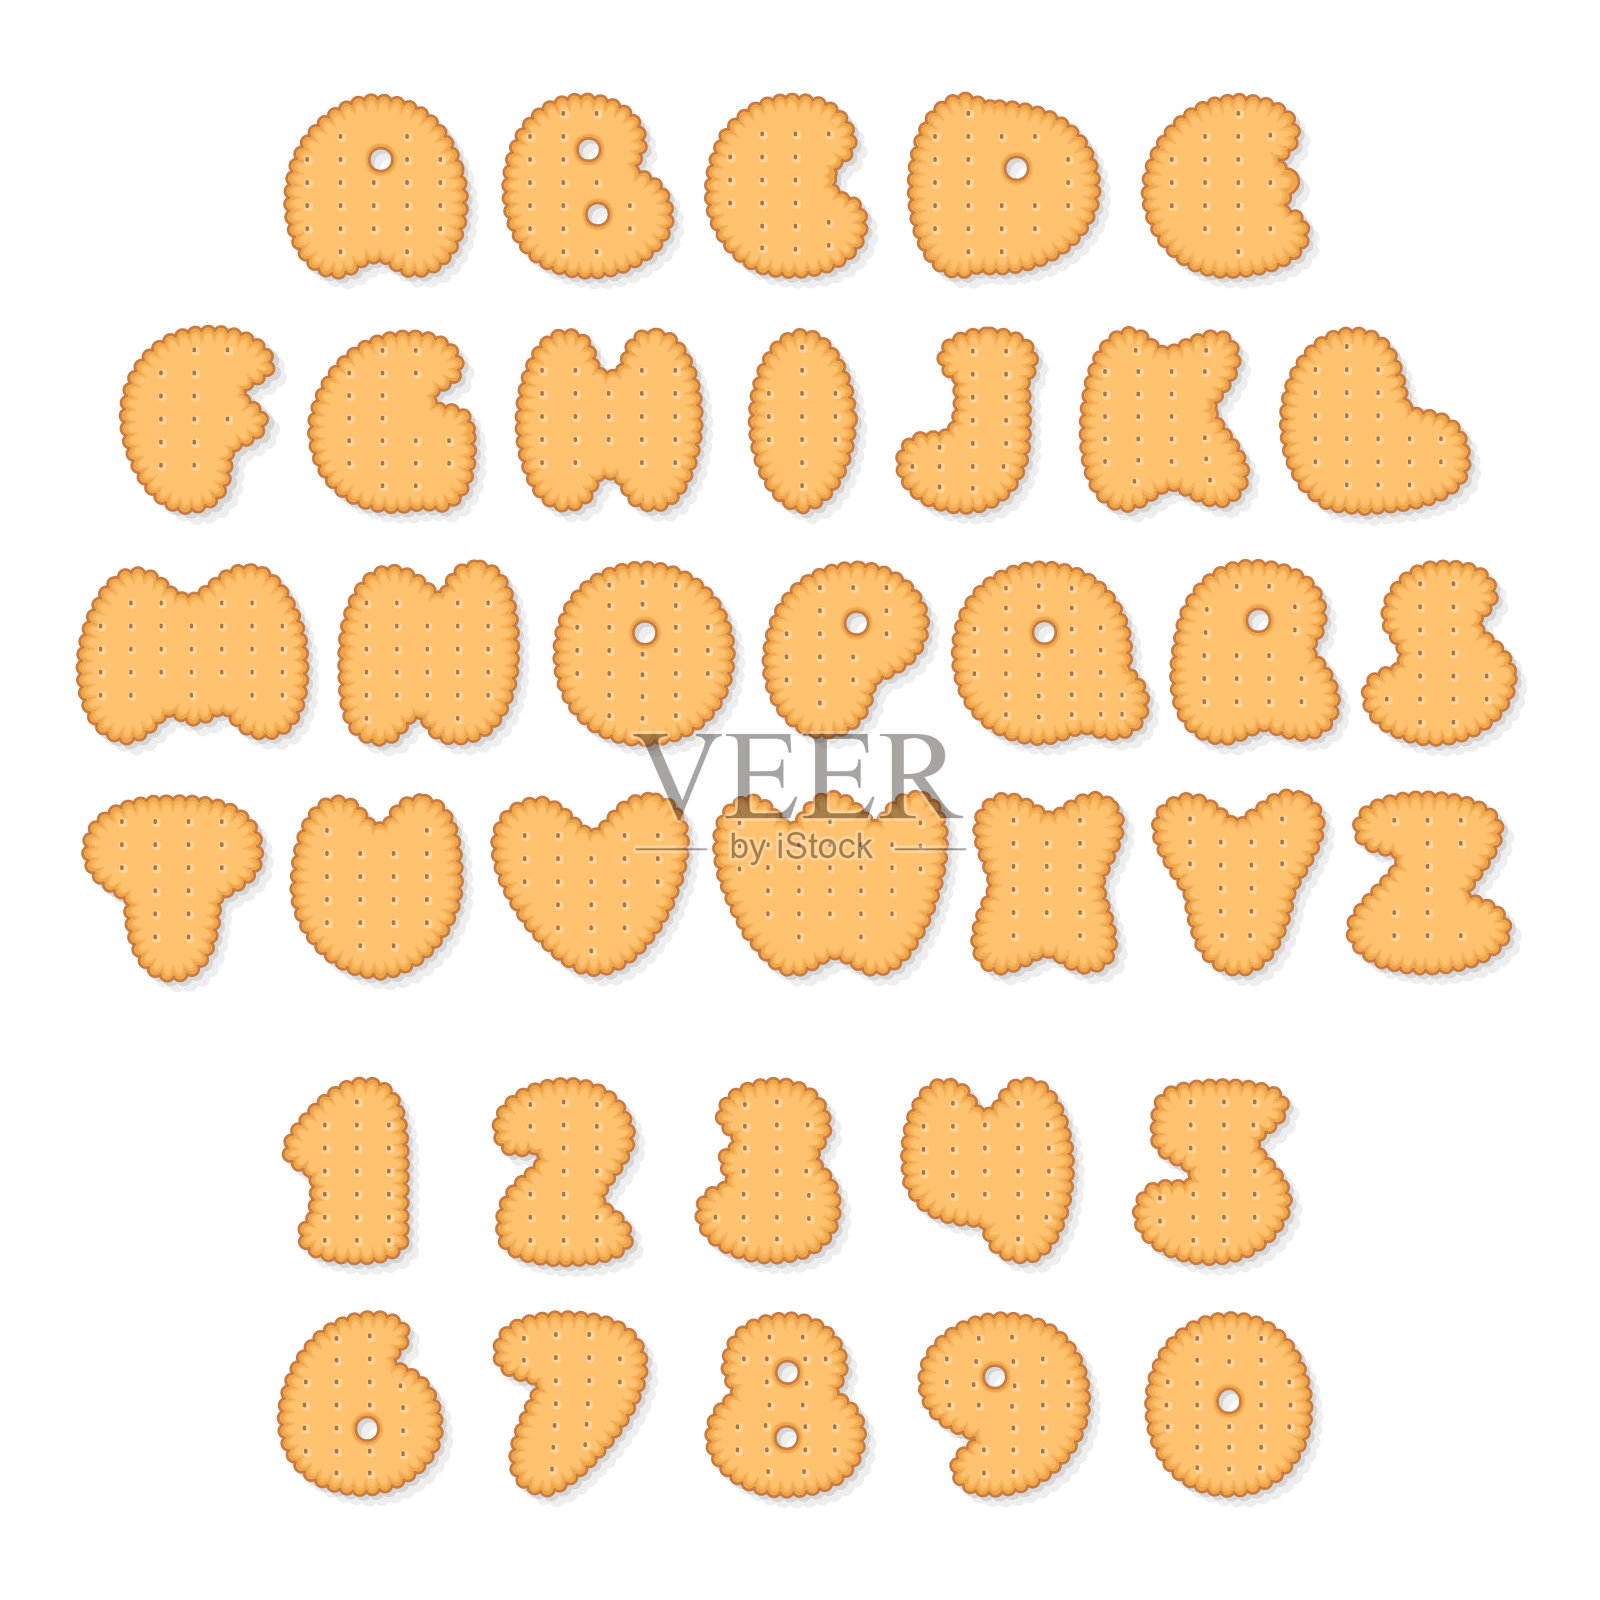 由字母和数字组成的饼干向量集插画图片素材